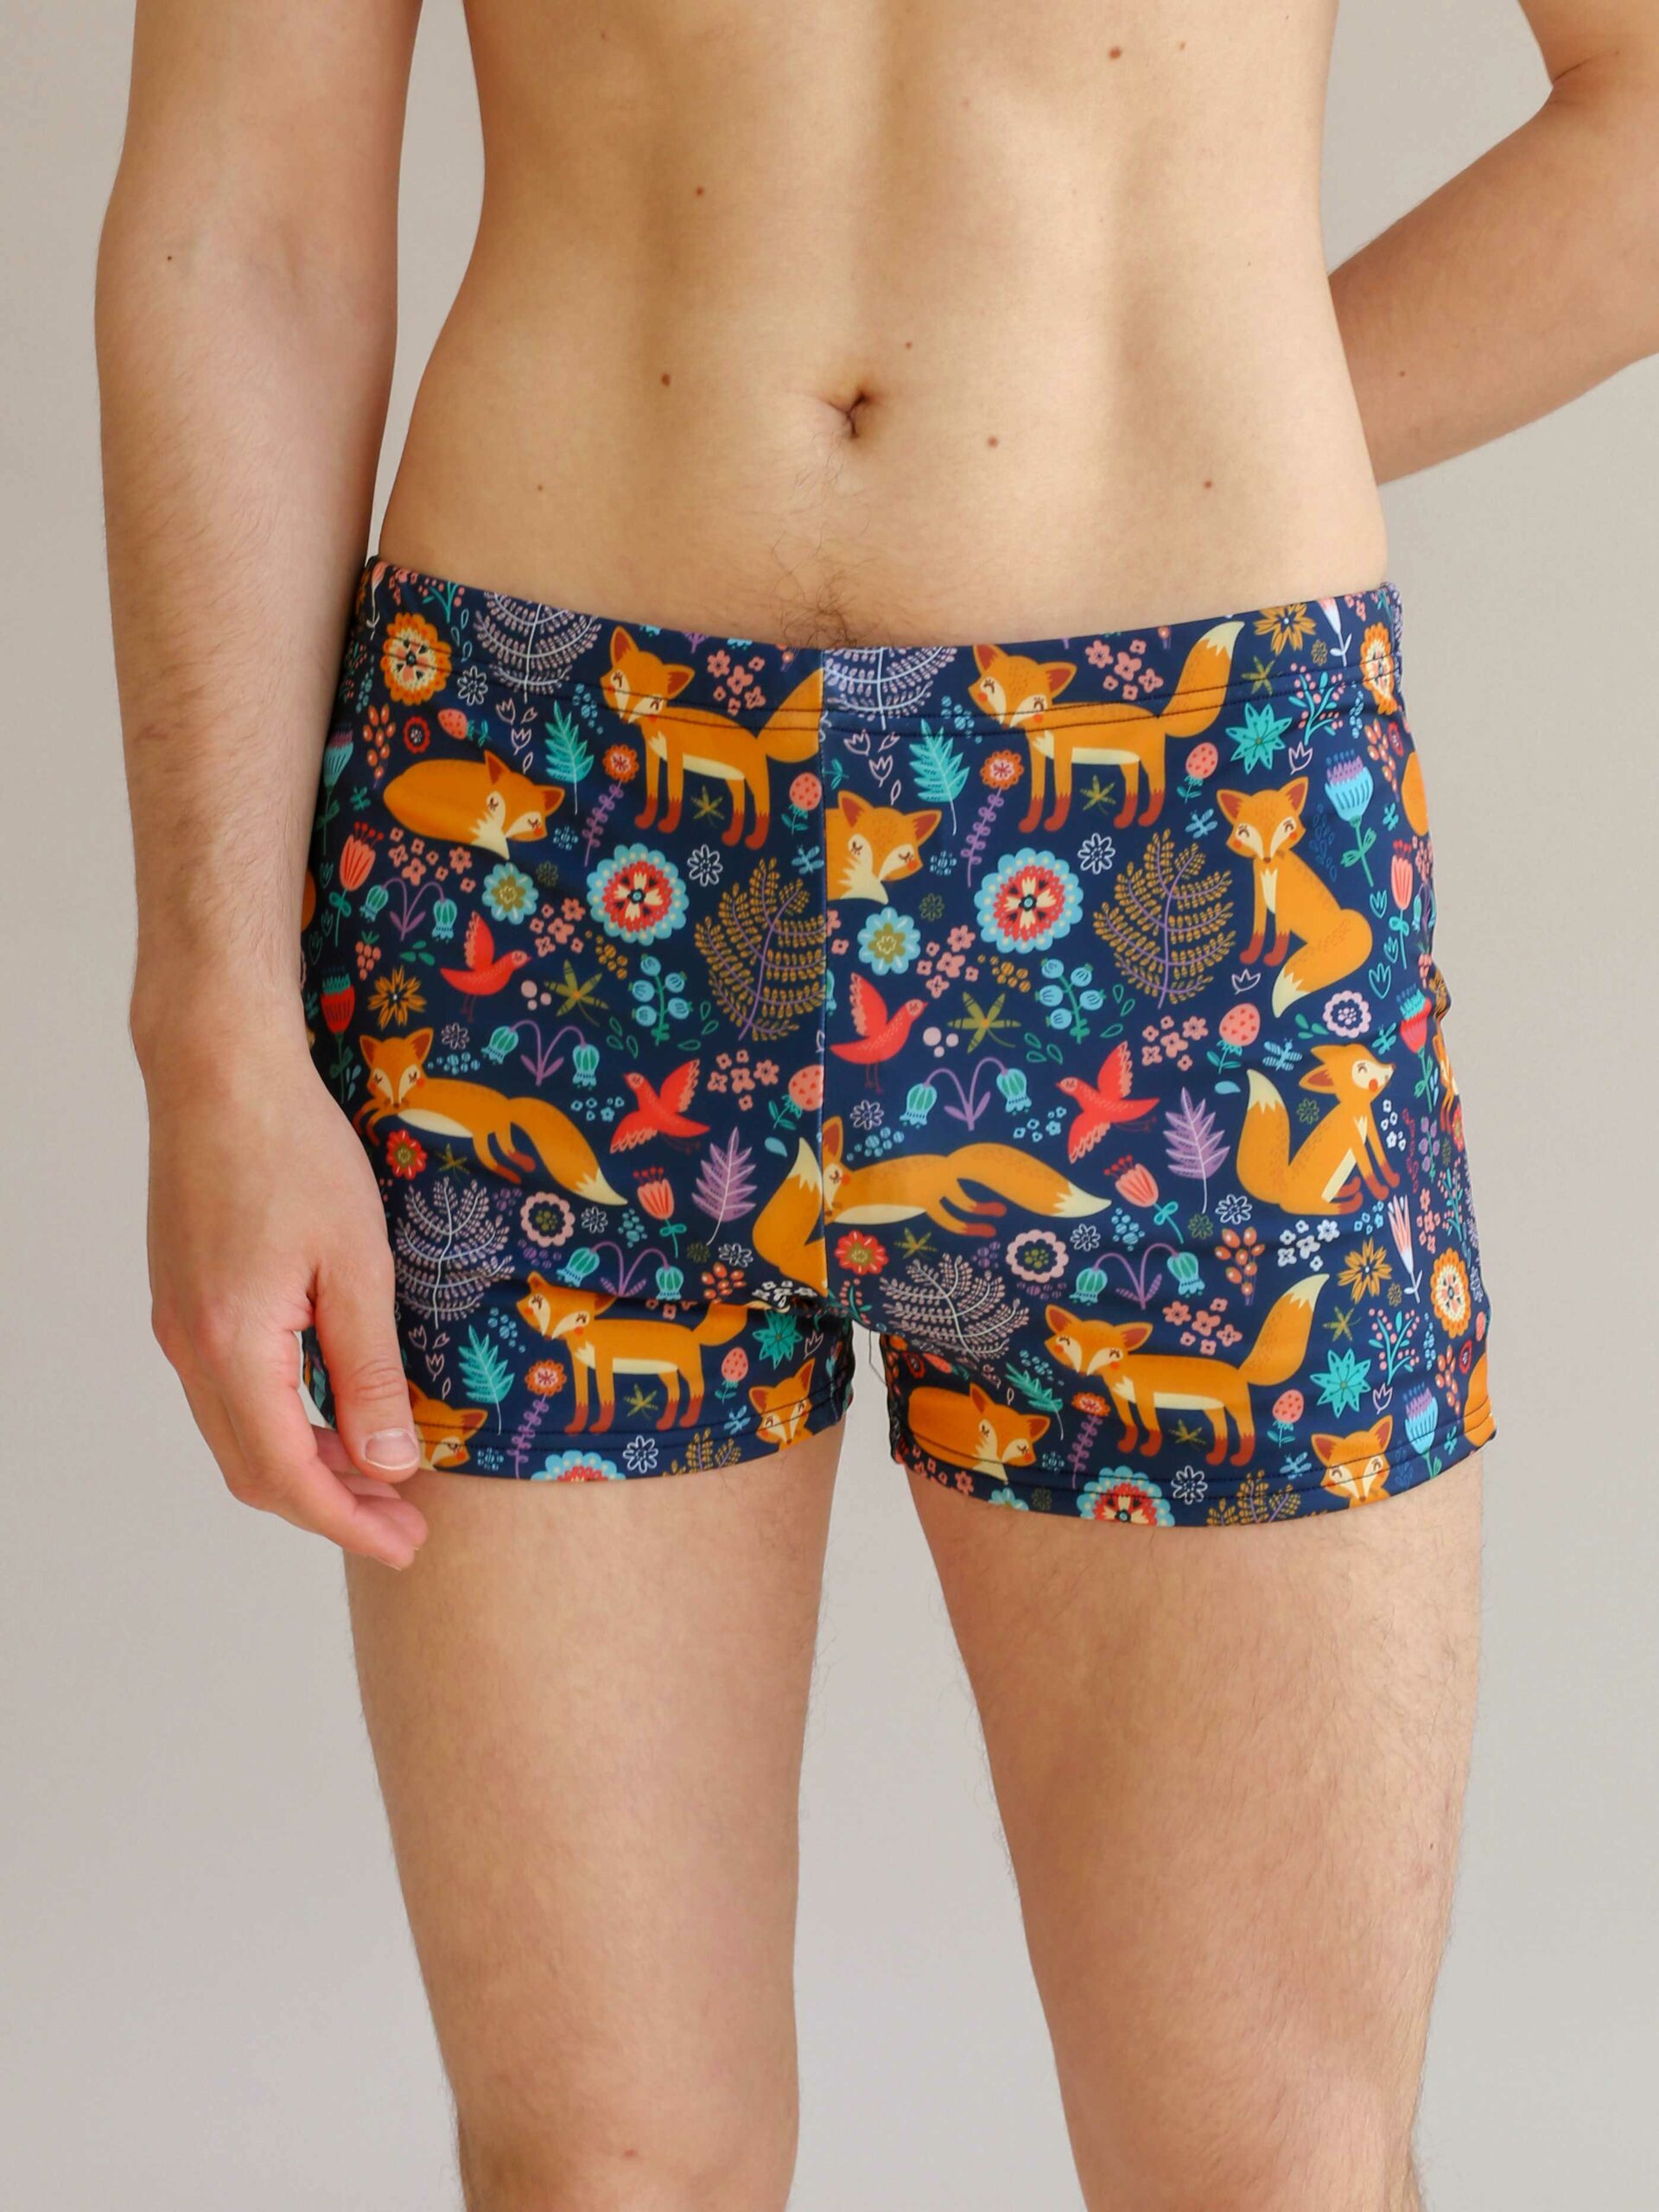 Мужские купальные шорты “Лисички” - Хлопковое бельё la-lama